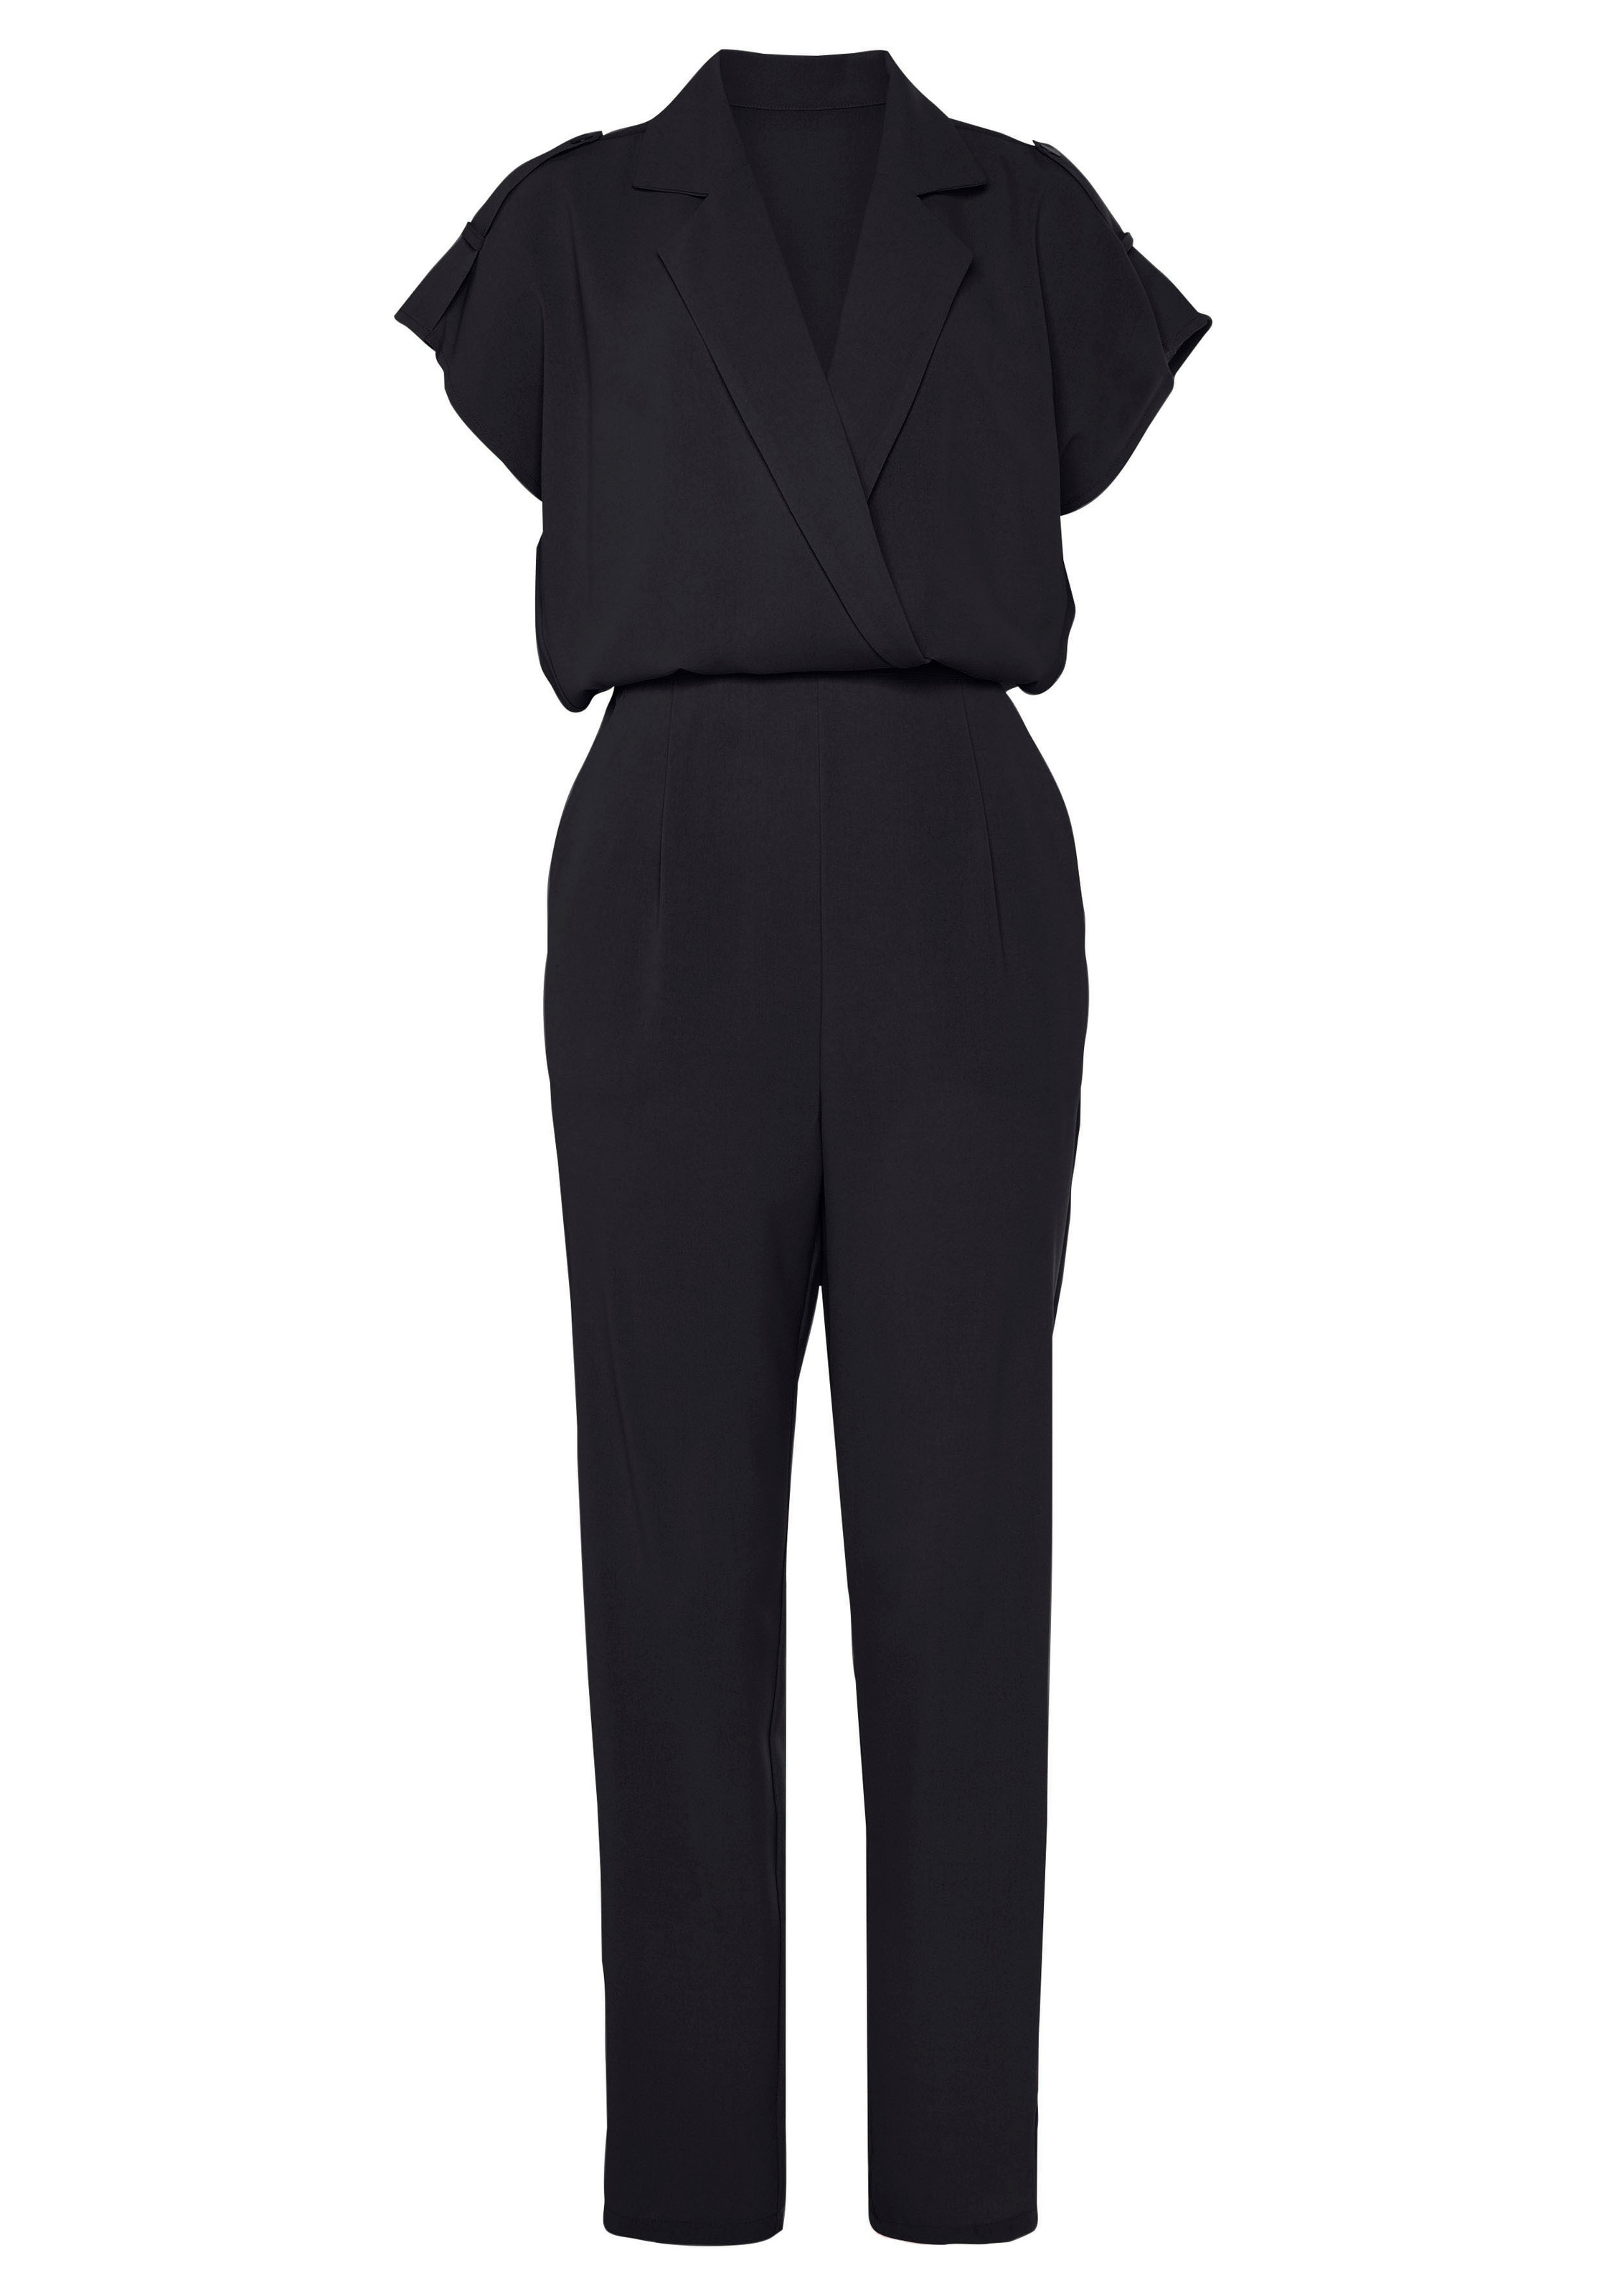 LASCANA Overall, mit Reverskragen und kurzen Ärmeln, eleganter Jumpsuit, casual-chic